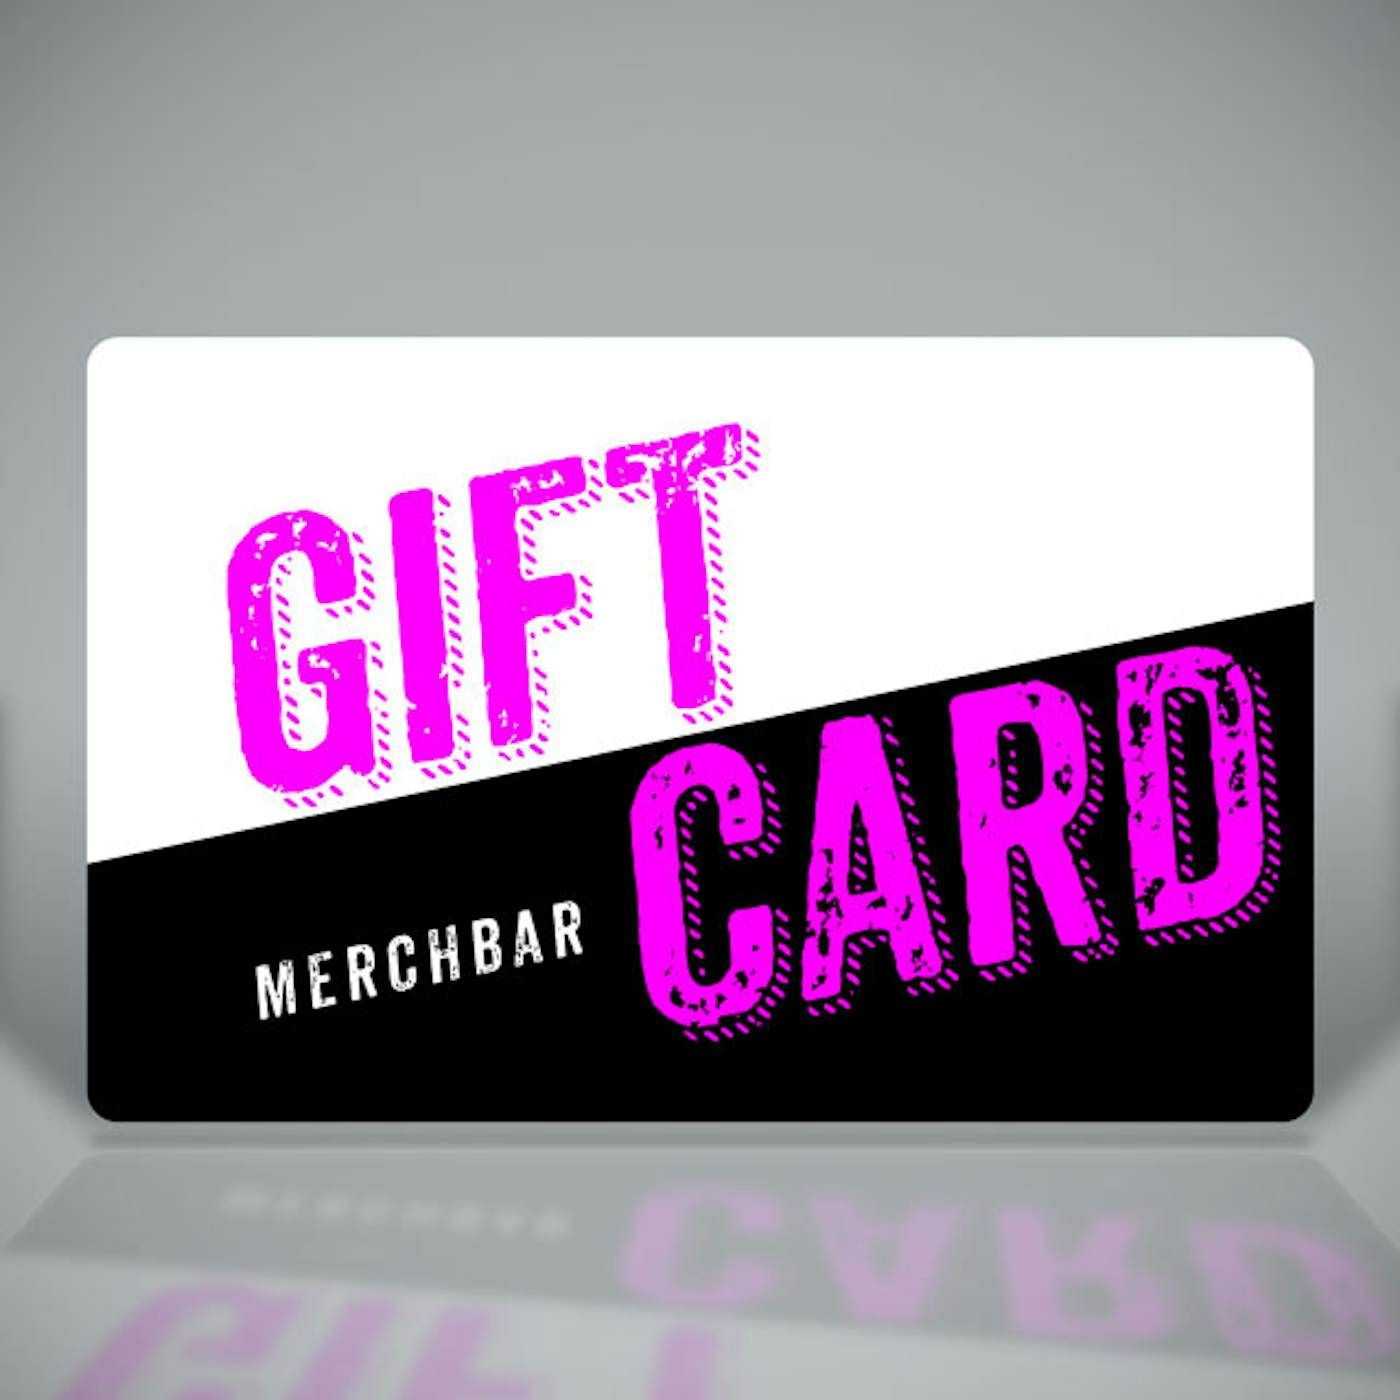 Merchbar Gift Cards Merchbar Big & Bright Gift Card